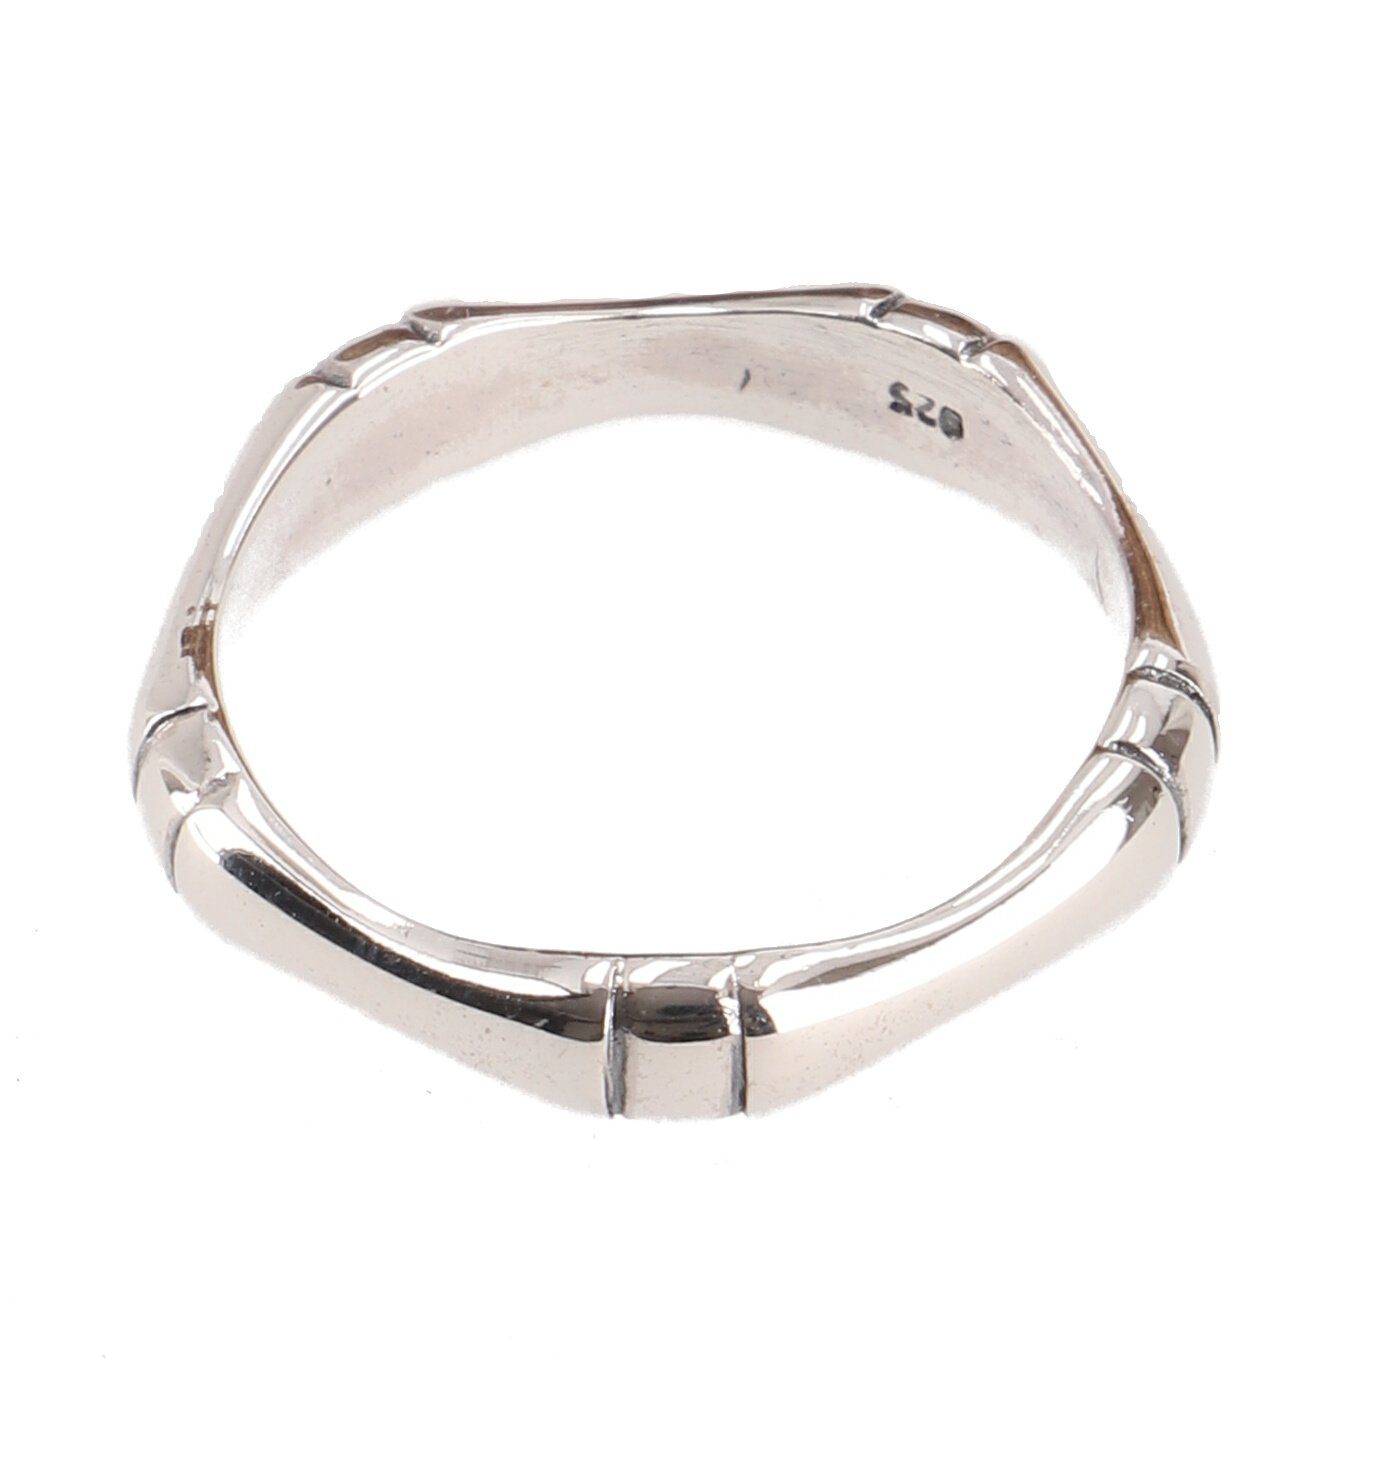 Guru-Shop Silberring Silberring, Boho Style Ethno Ring - Modell 35 65 (20,8 mm)